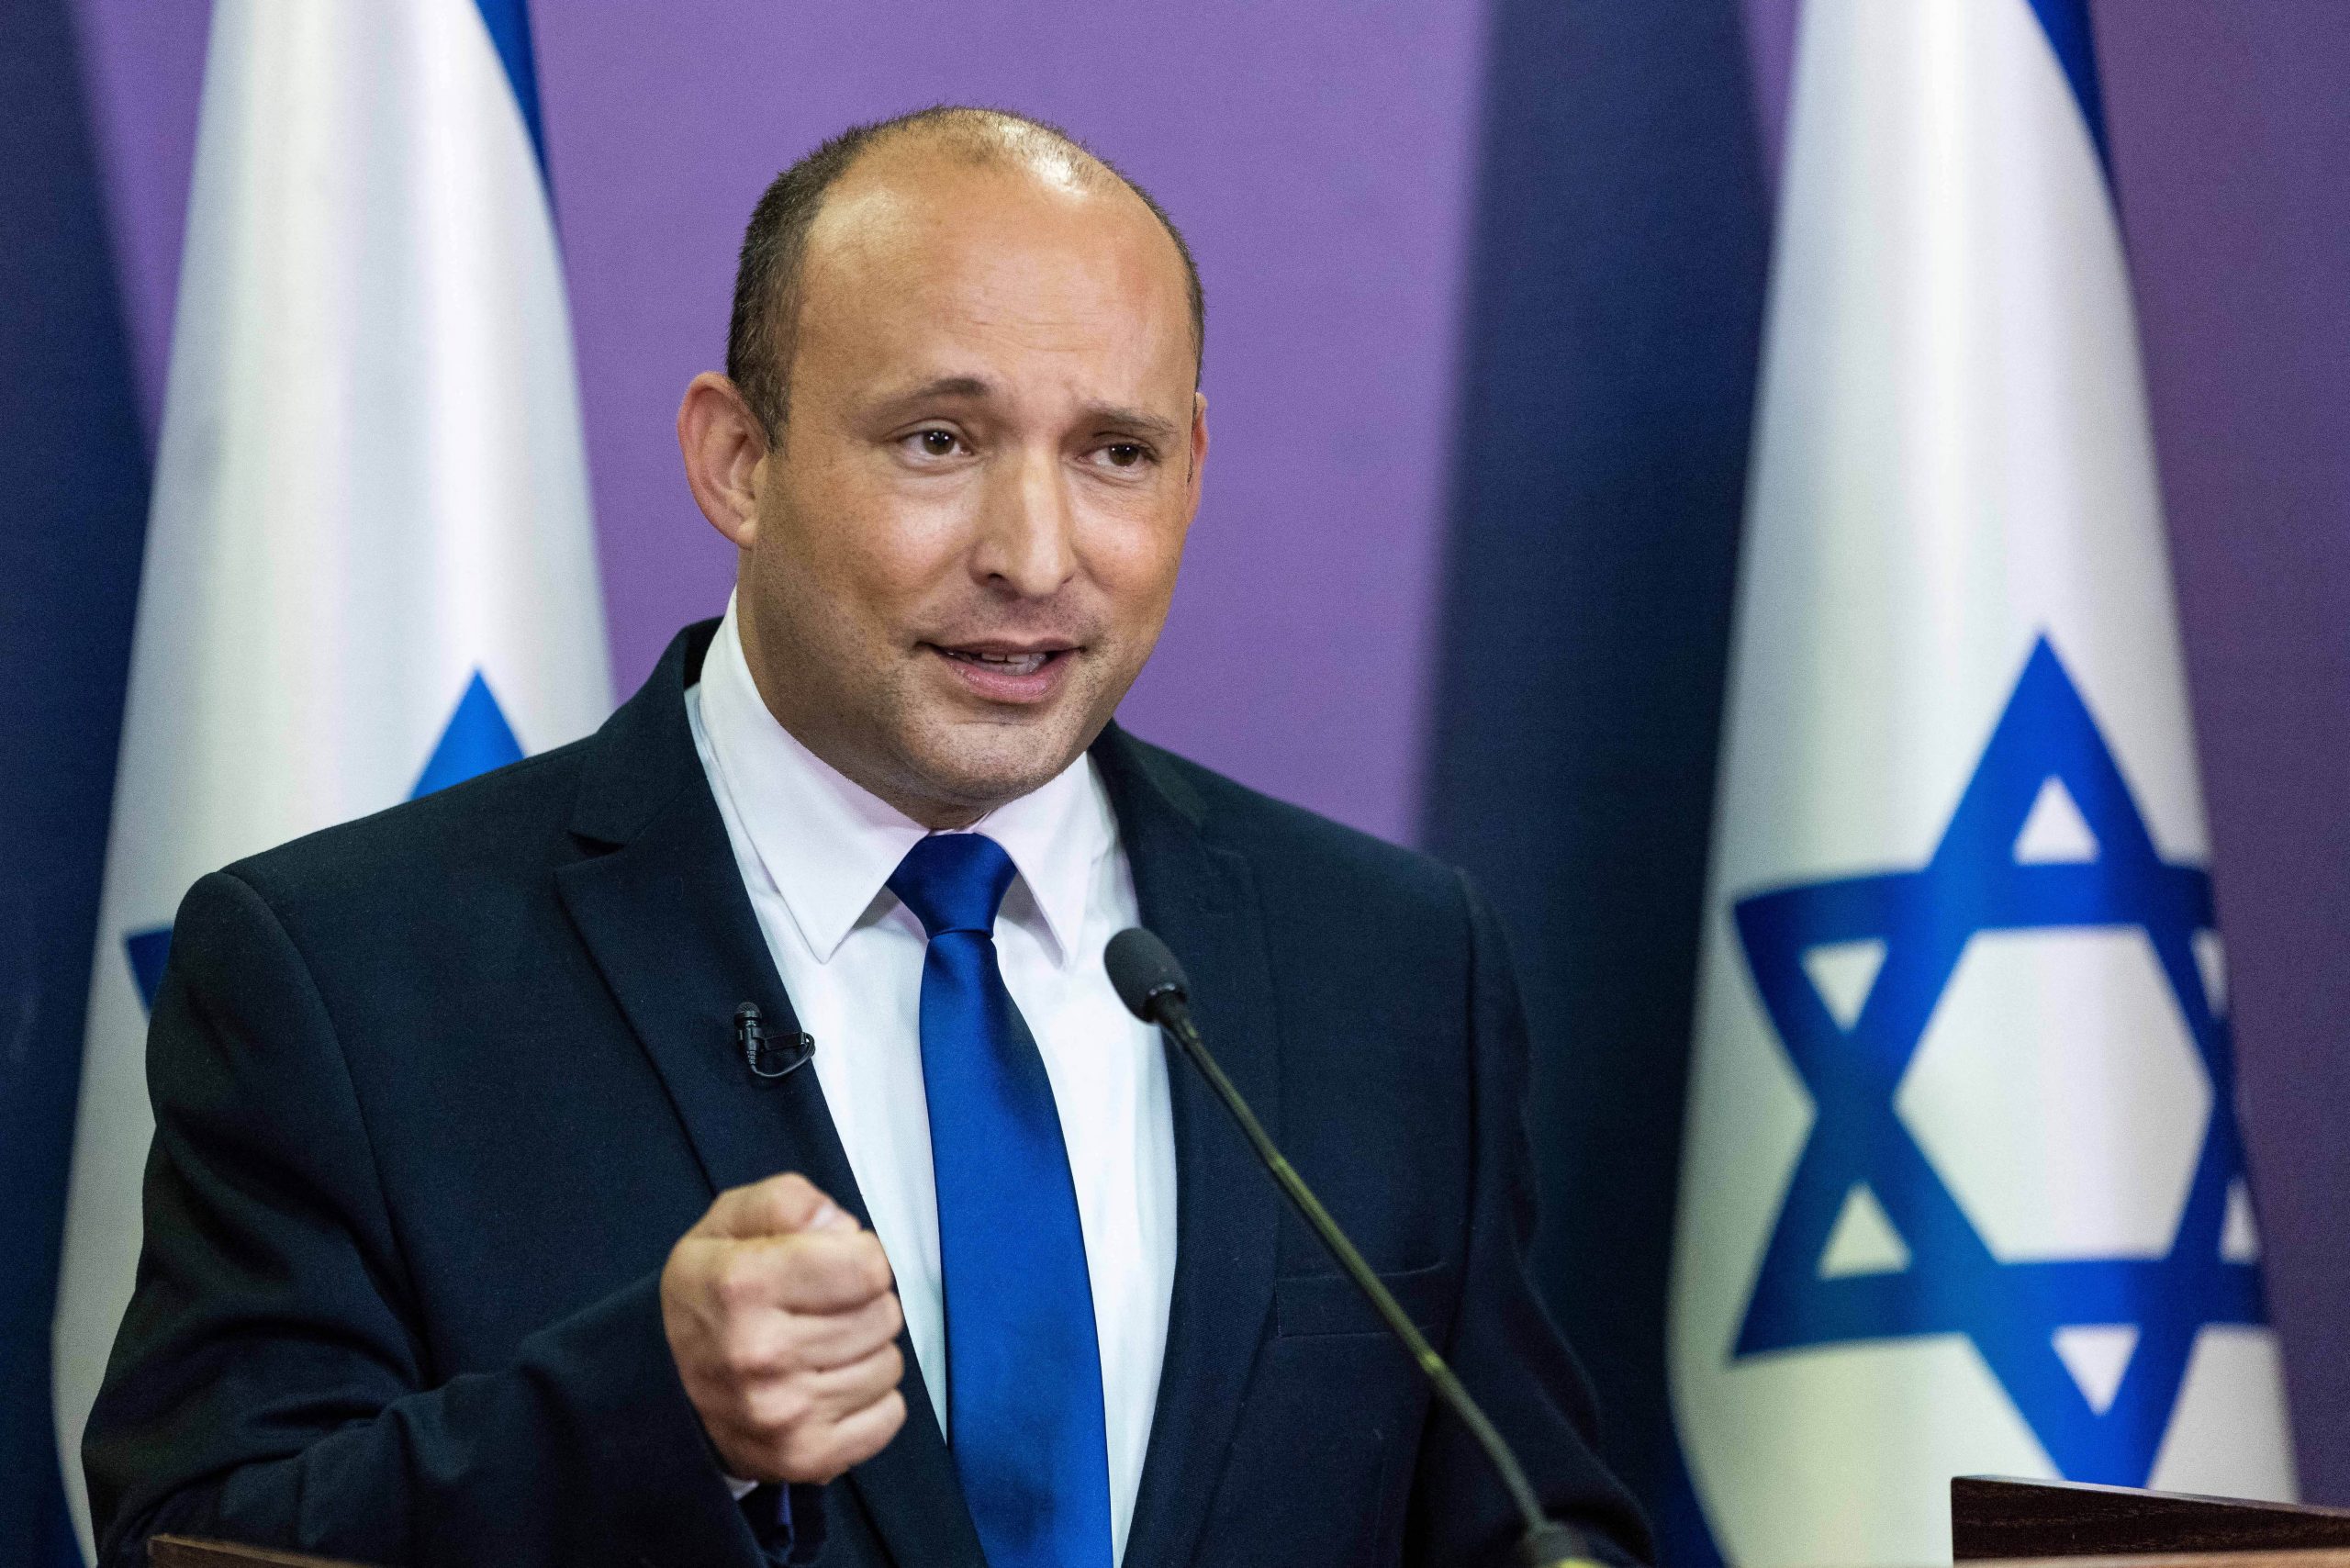 Naftali Bennett, tech millionaire and Israel’s new premier